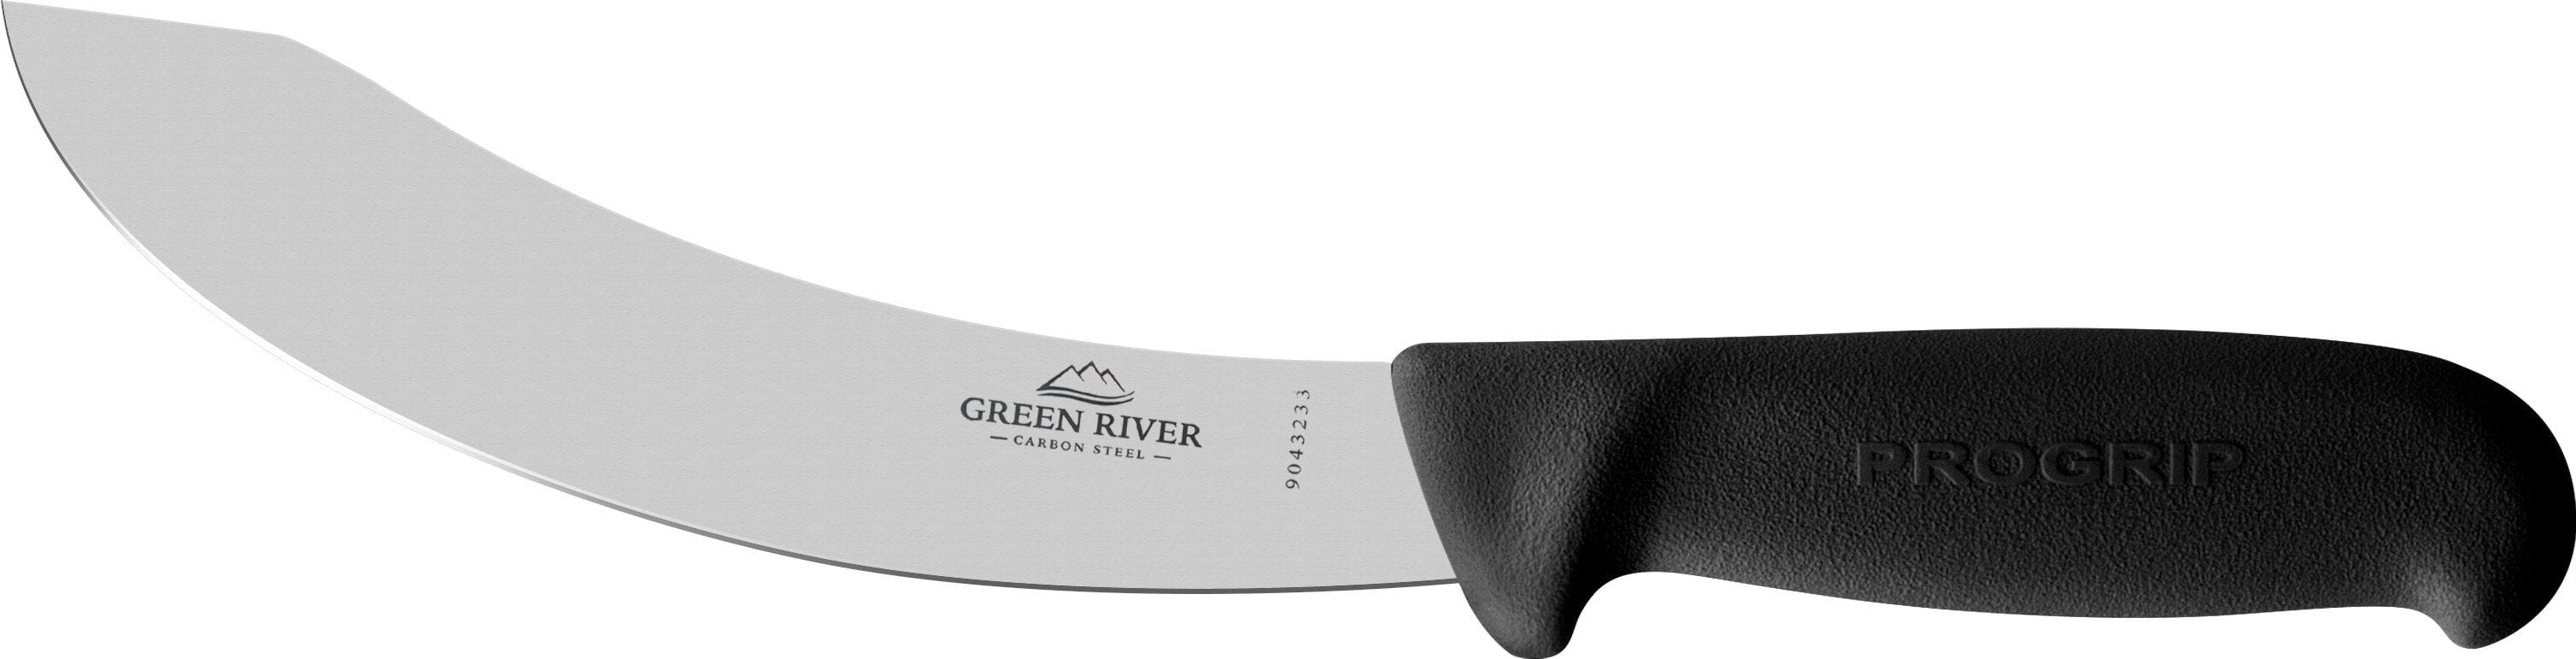 Green River Skinning Knife 17cm #100